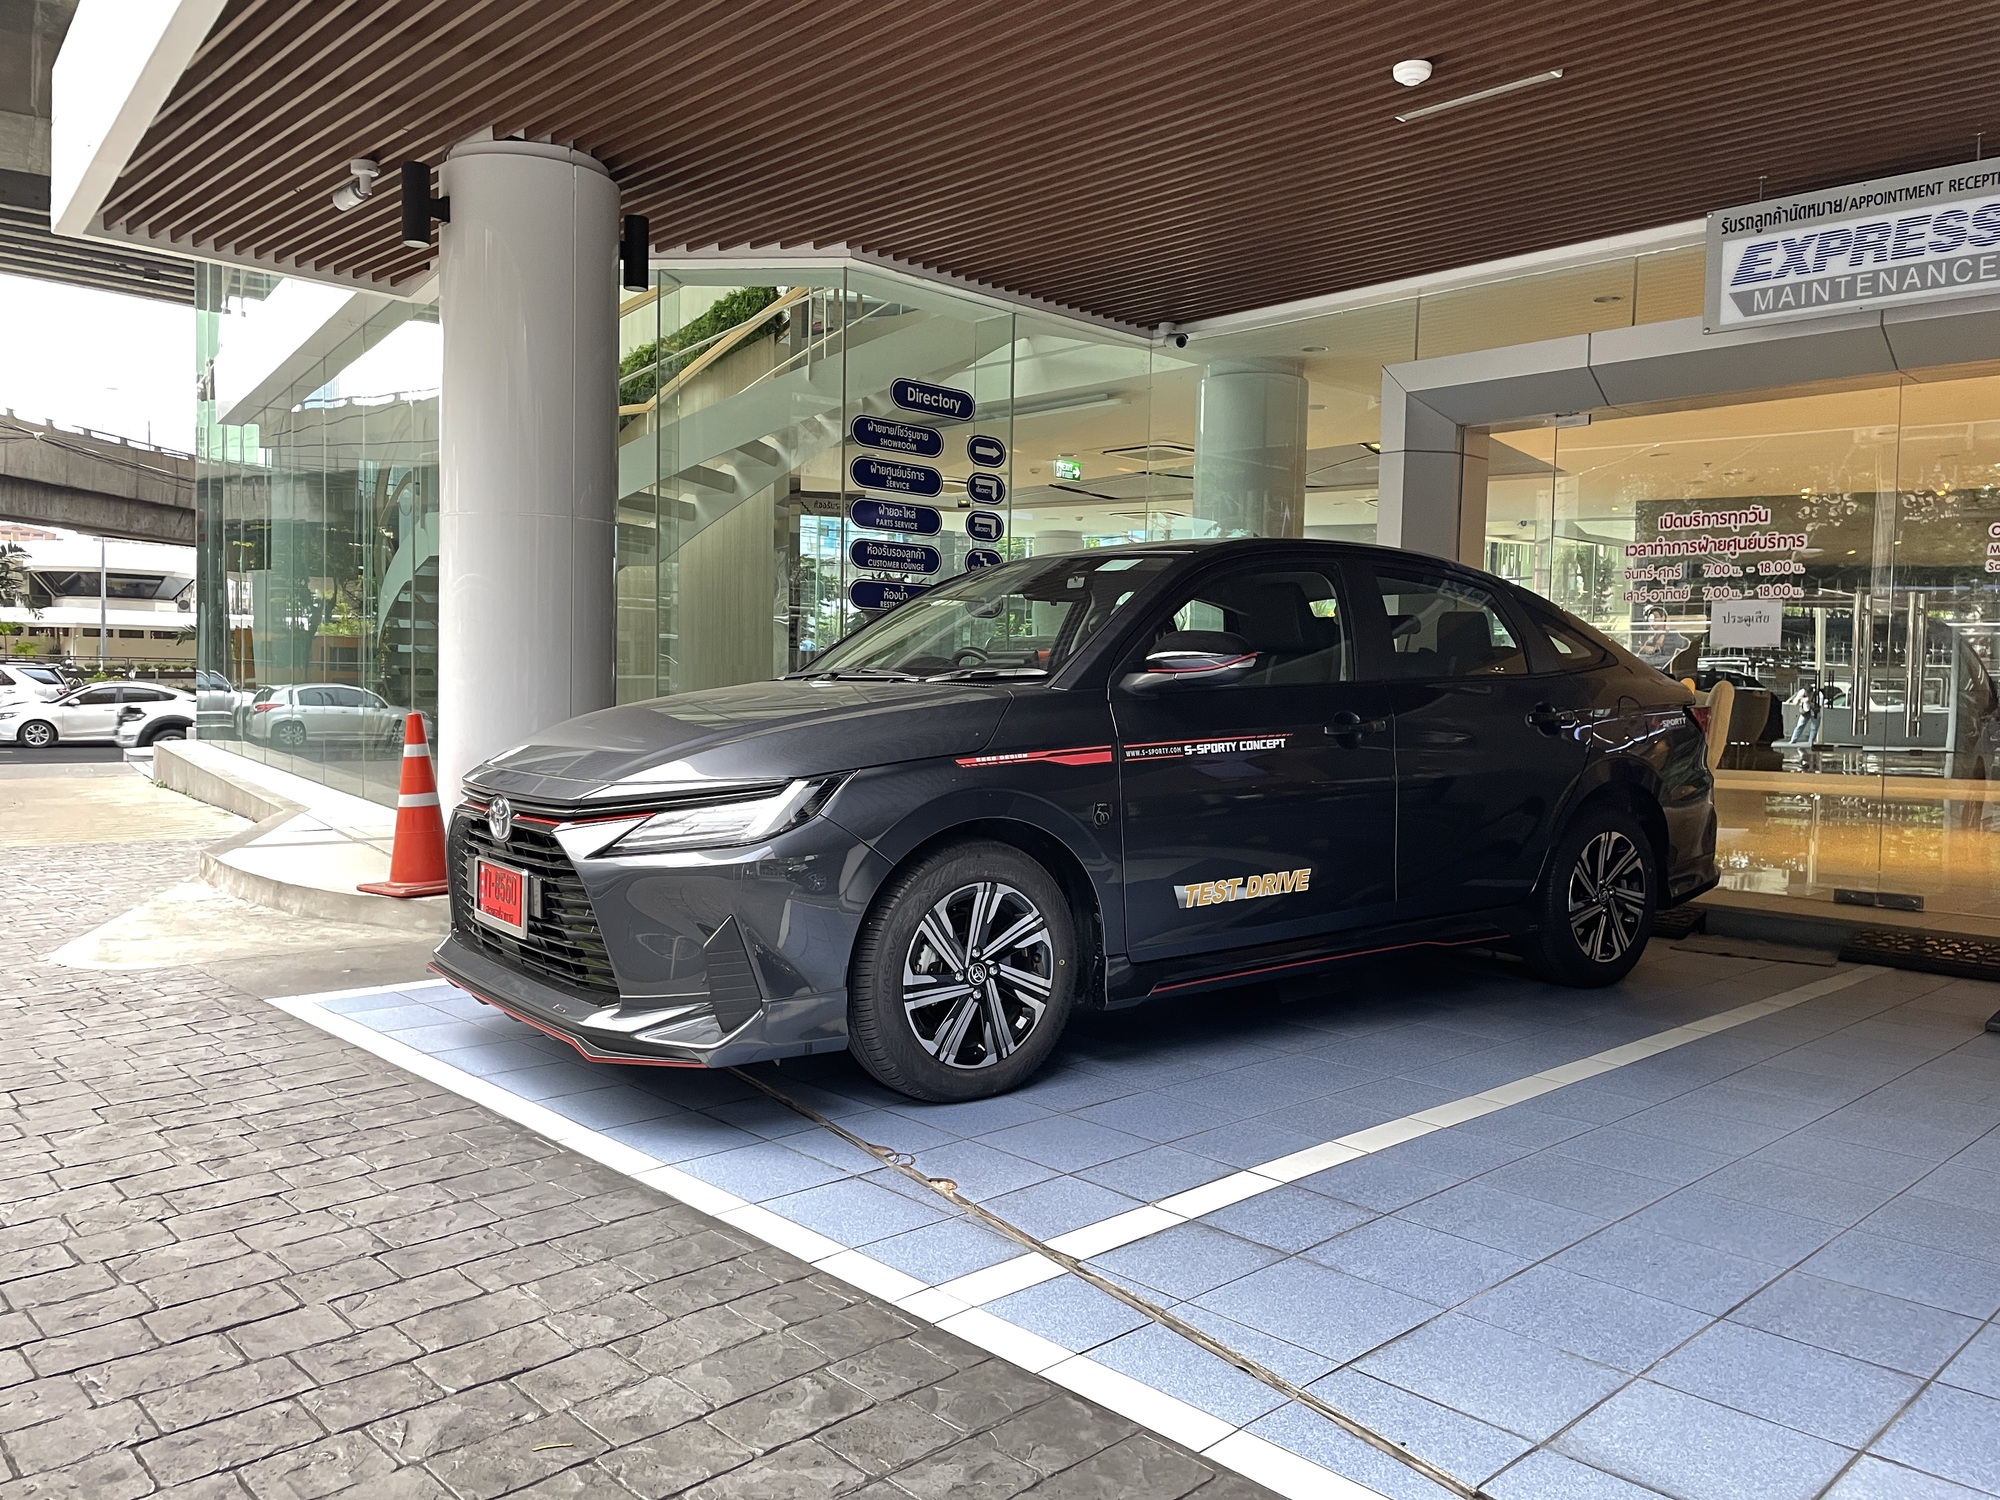 Trải nghiệm nhanh Toyota Vios thế hệ mới tại Thái Lan: Nhiều nâng cấp để có thể thành vua phân khúc - Ảnh 16.